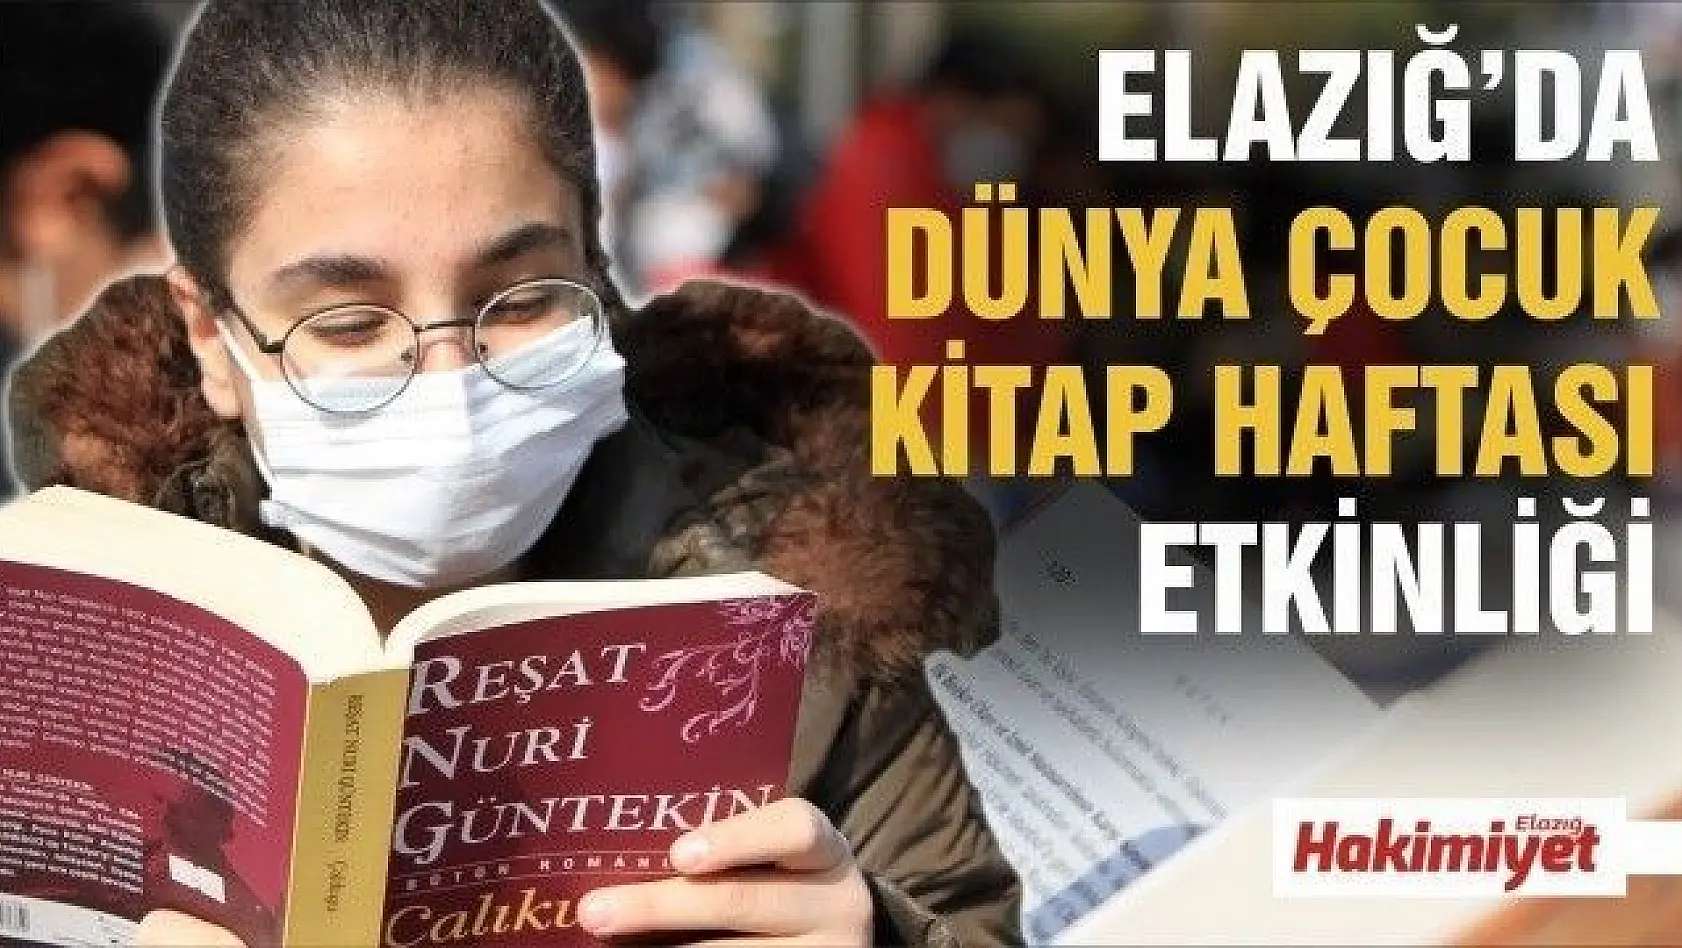 Elazığ'da, 'Dünya Çocuk Kitap Haftası' etkinliği